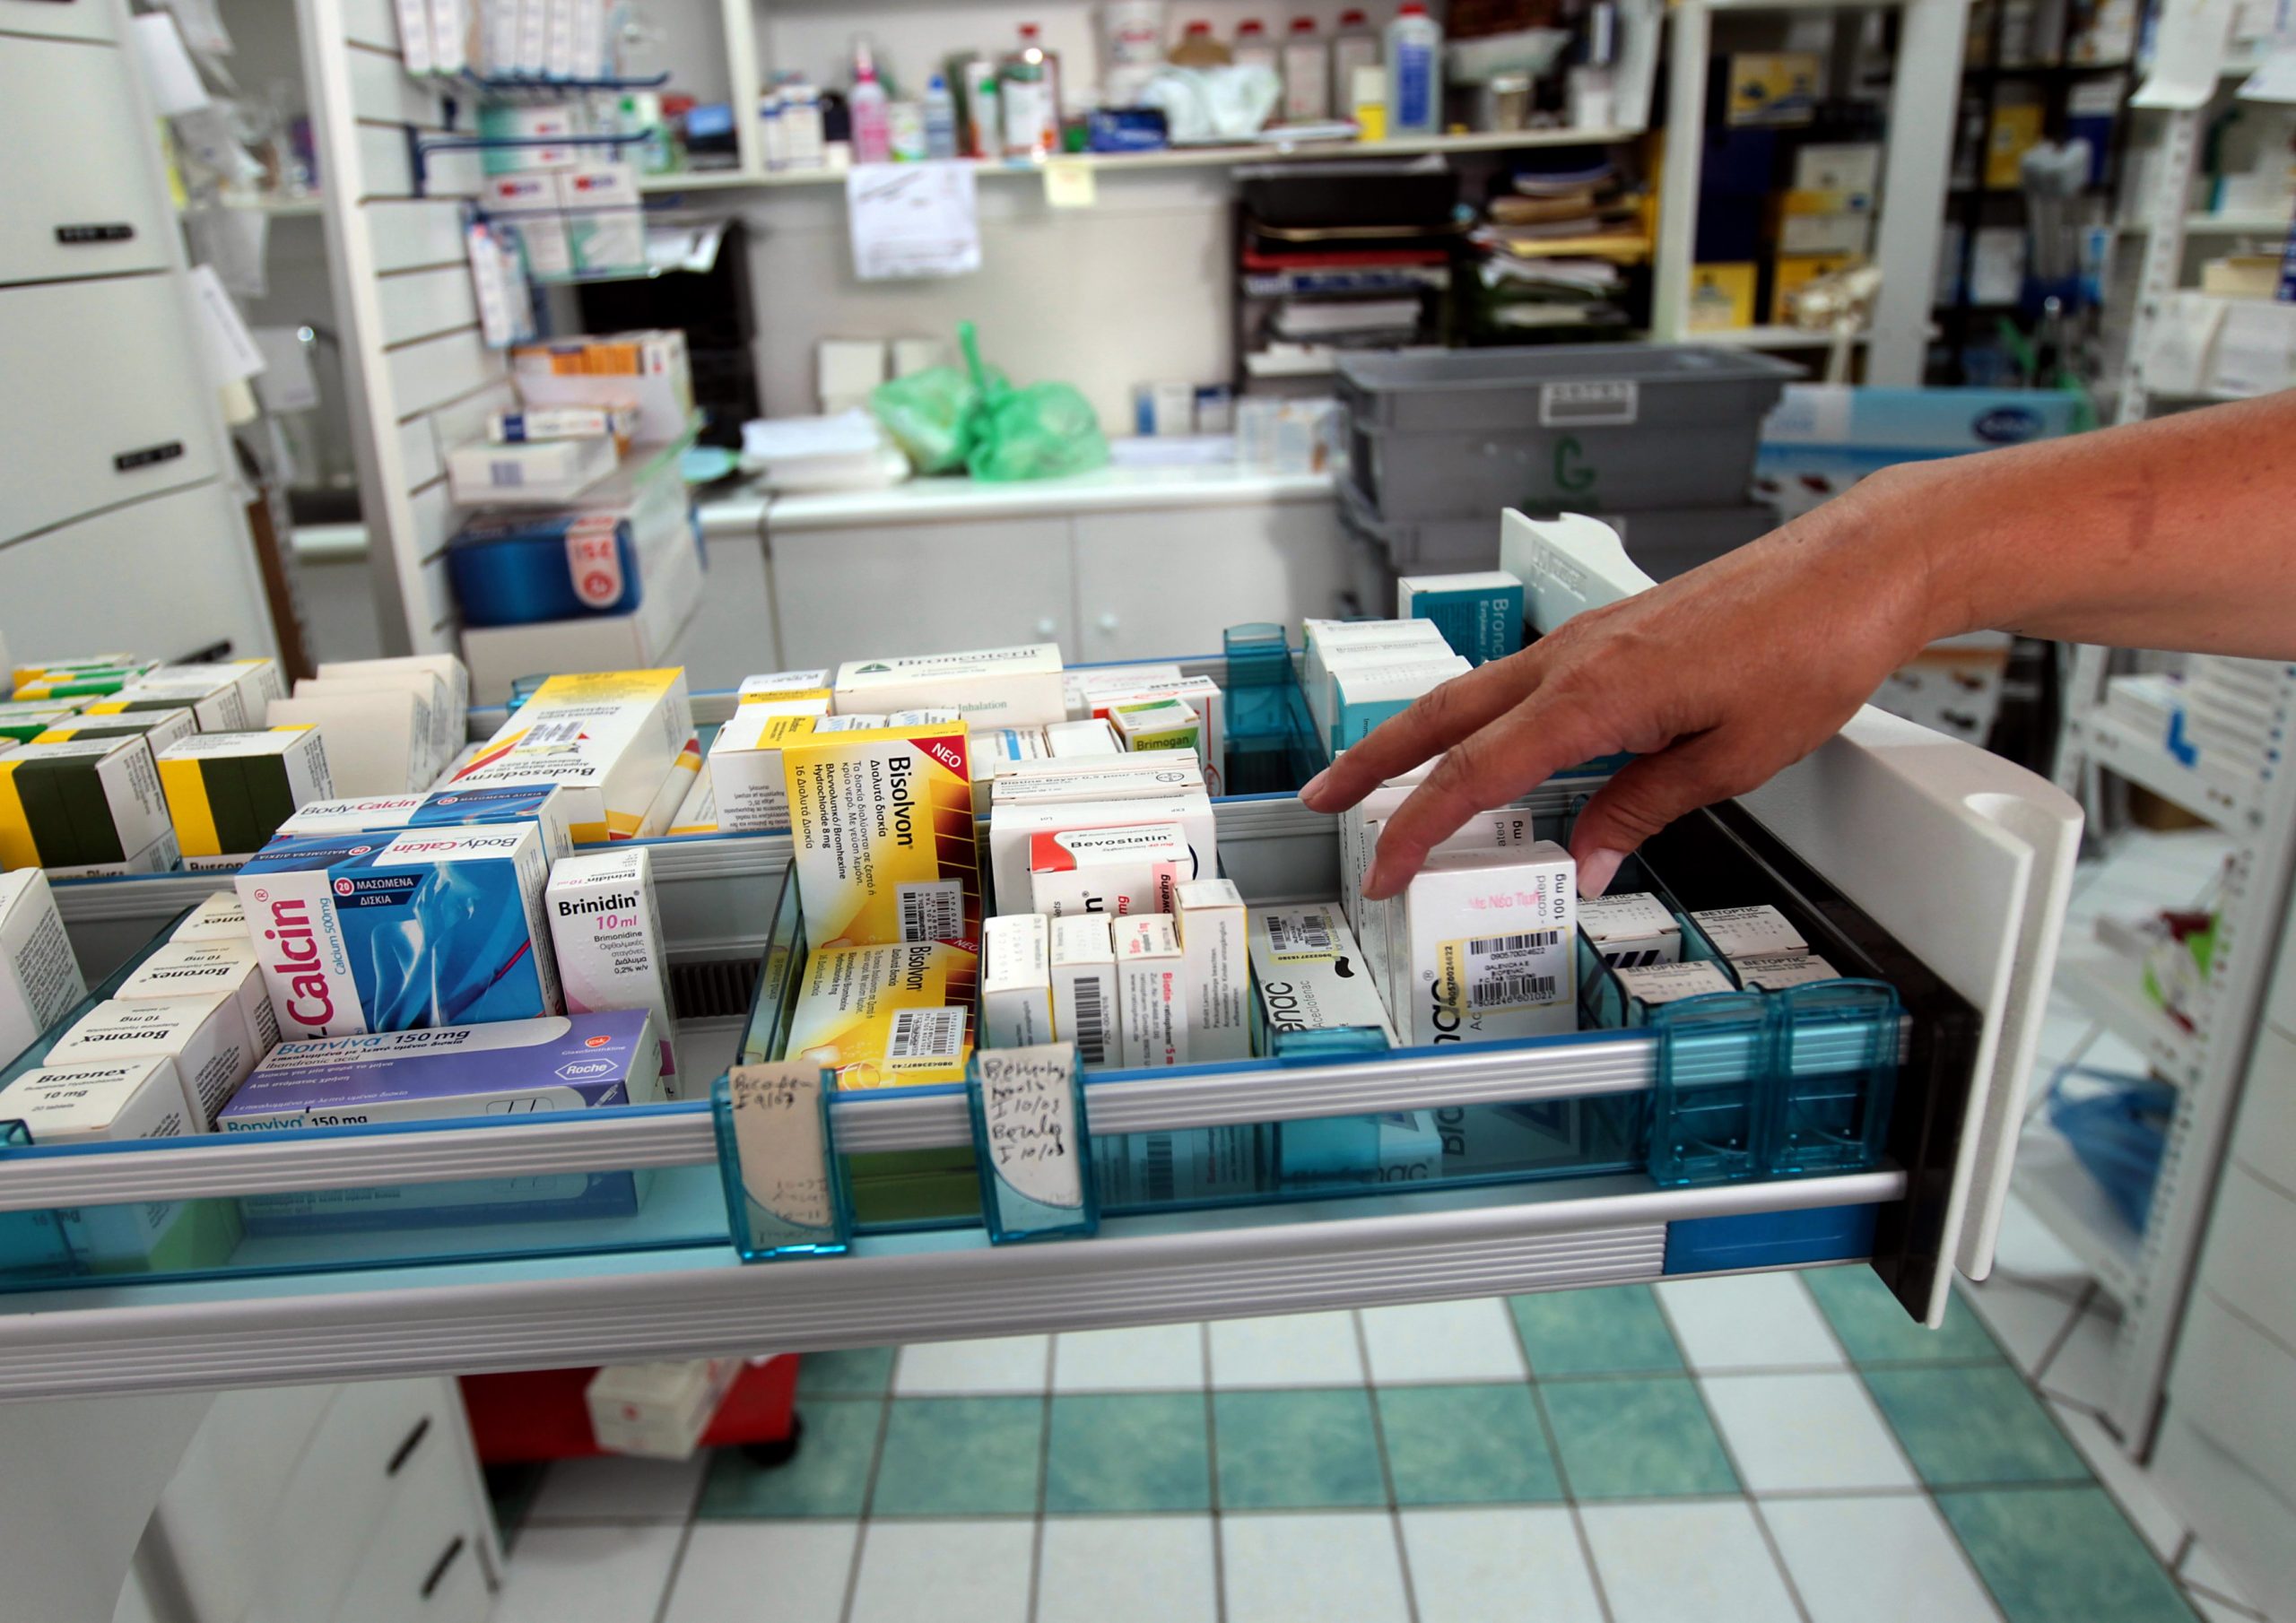 Ελλείψεις φαρμάκων: Αιχμές Φαρμακαποθηκαρίων για την απόφαση του ΕΟΦ περί προσωρινής απαγόρευσης εξαγωγών